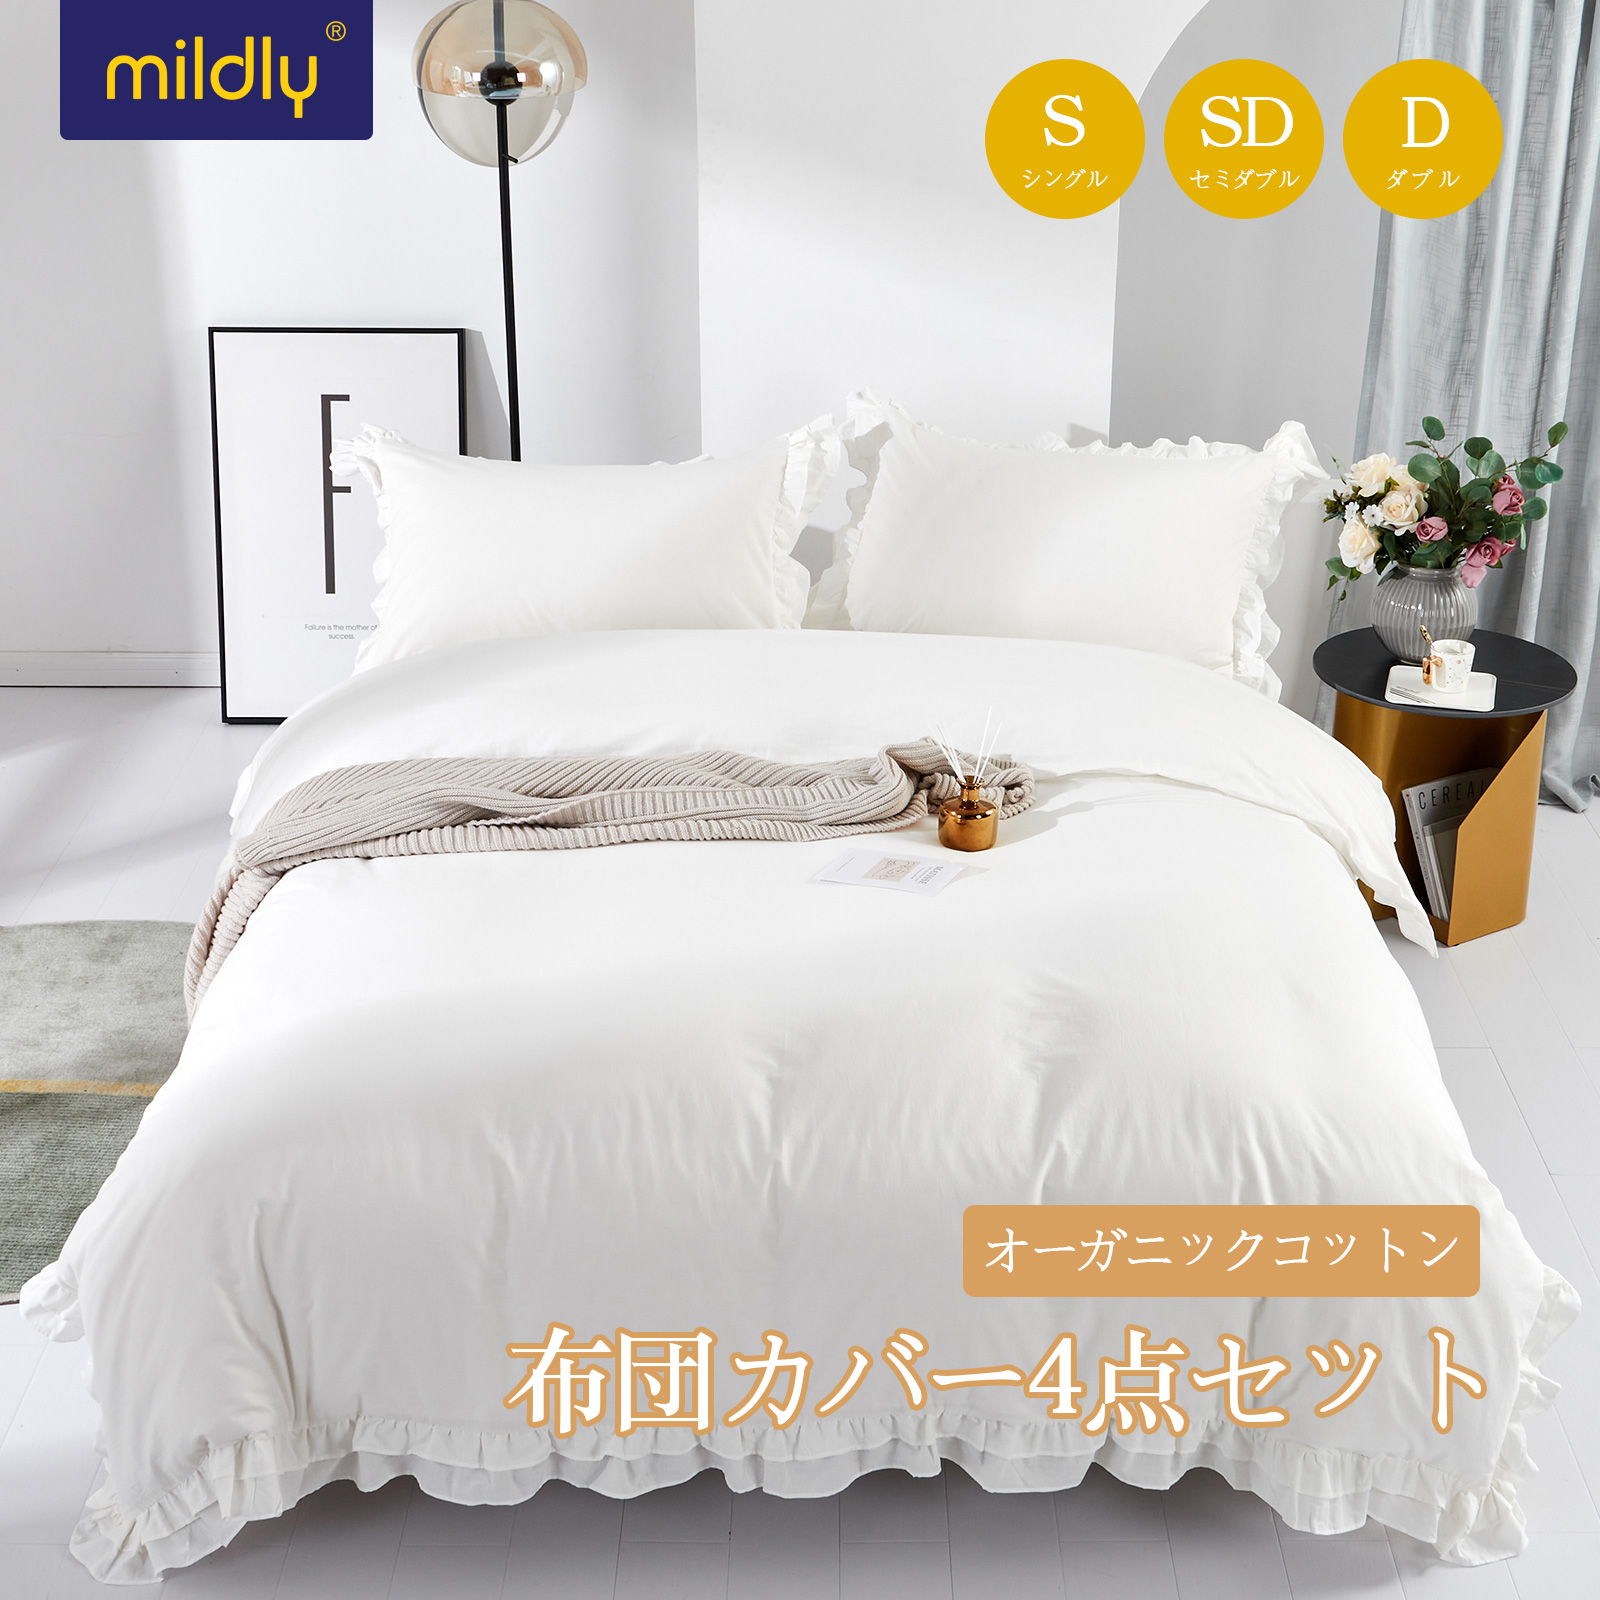 【楽天市場】MILDLY 布団カバーセット ホワイト フリル 綿100